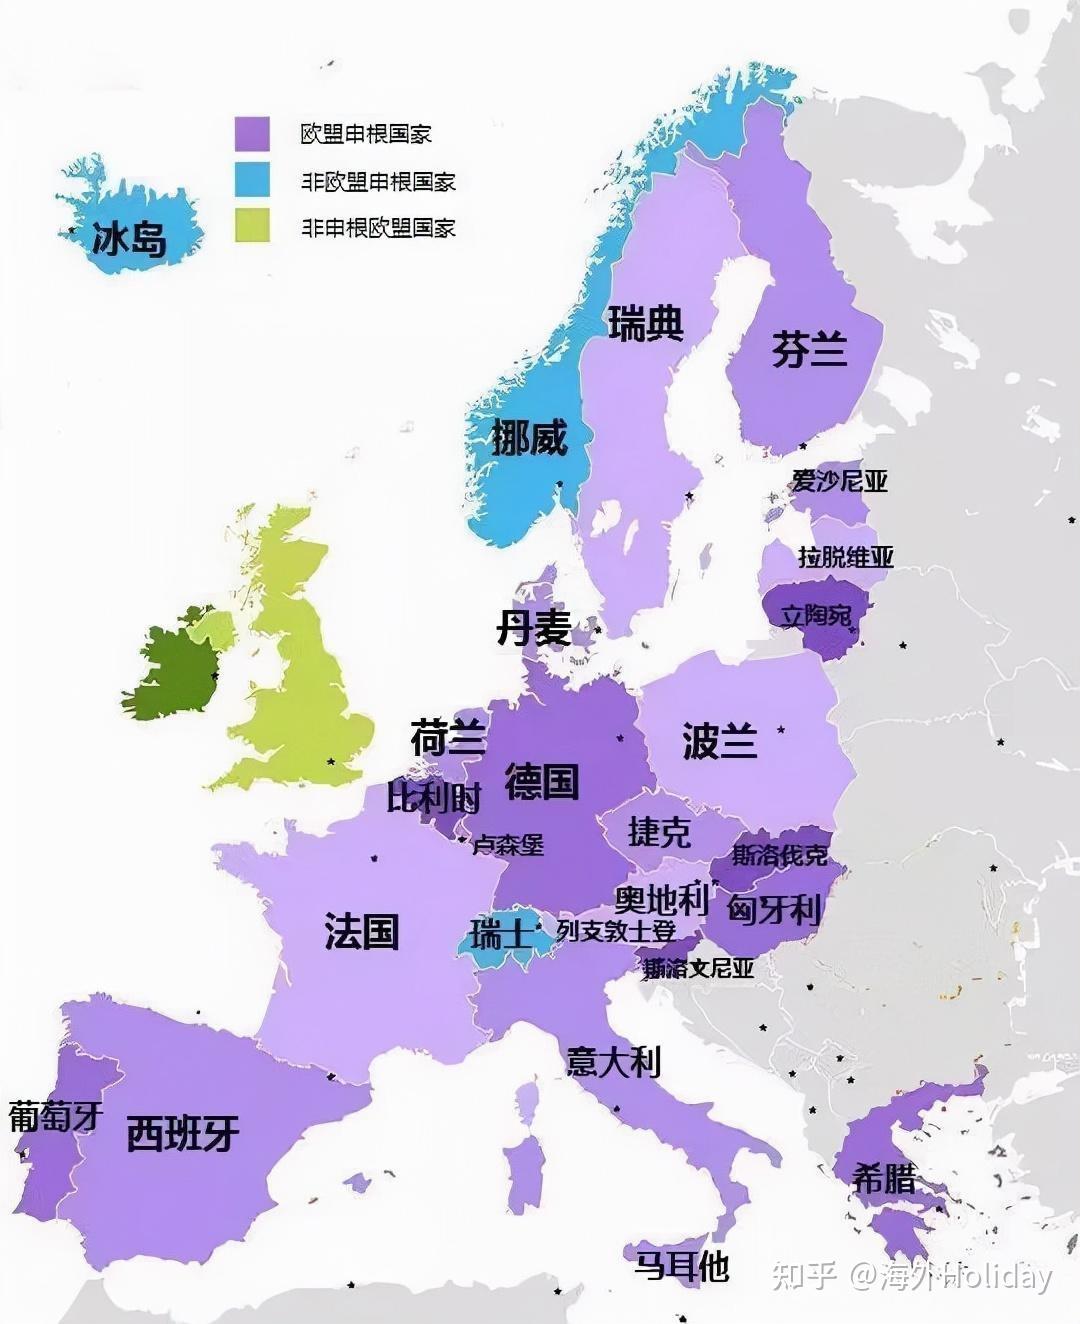 英语在欧洲语言体系中是什么位置